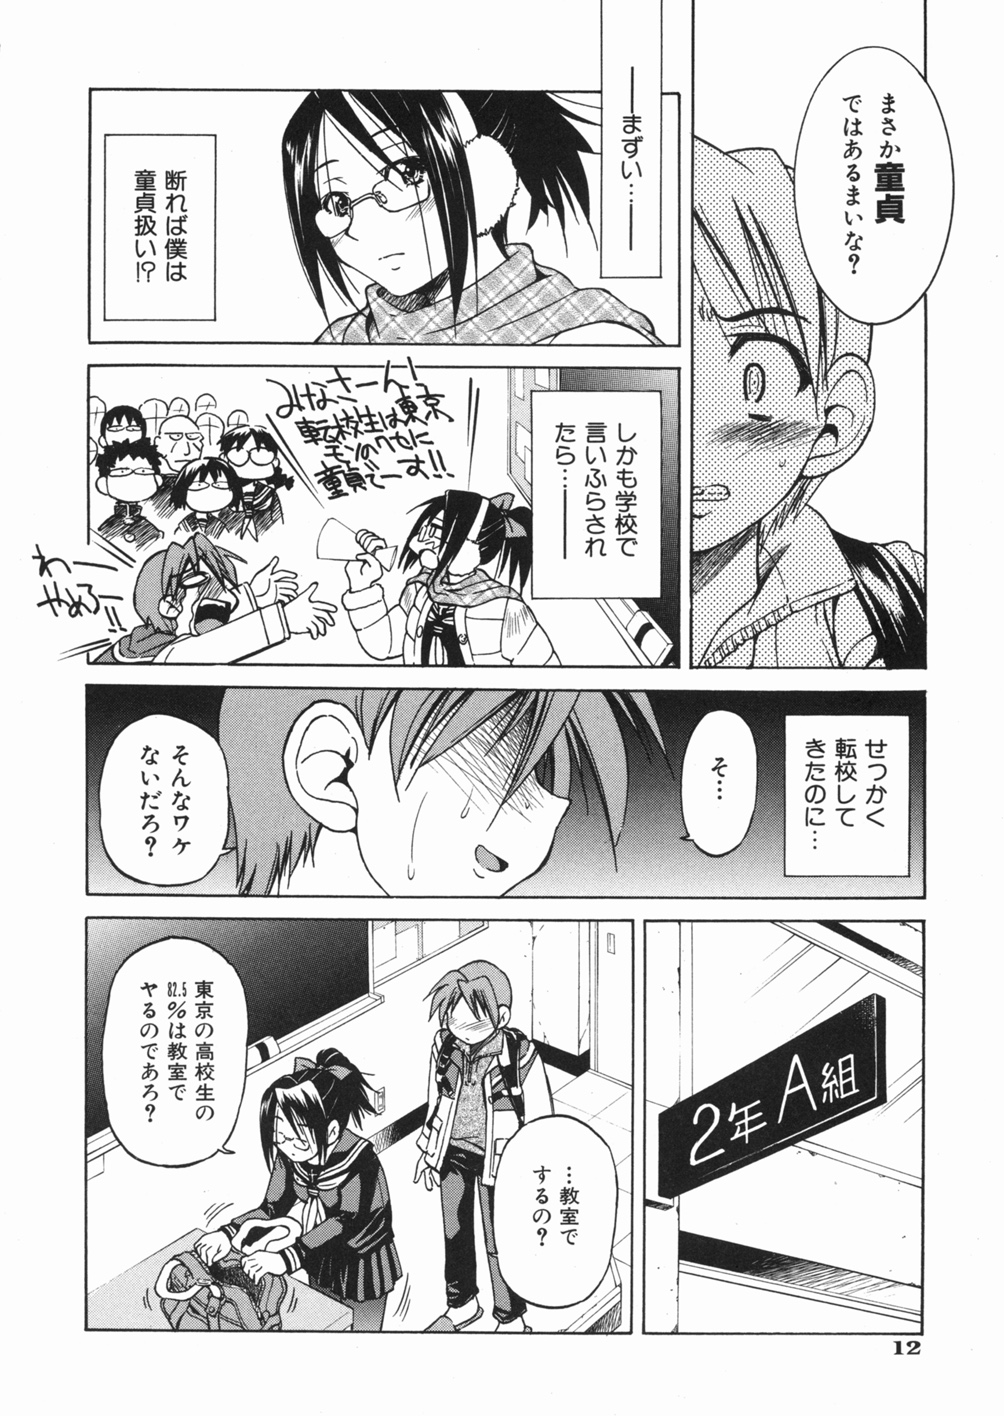 [Inoue Yoshihisa] Sunao page 16 full